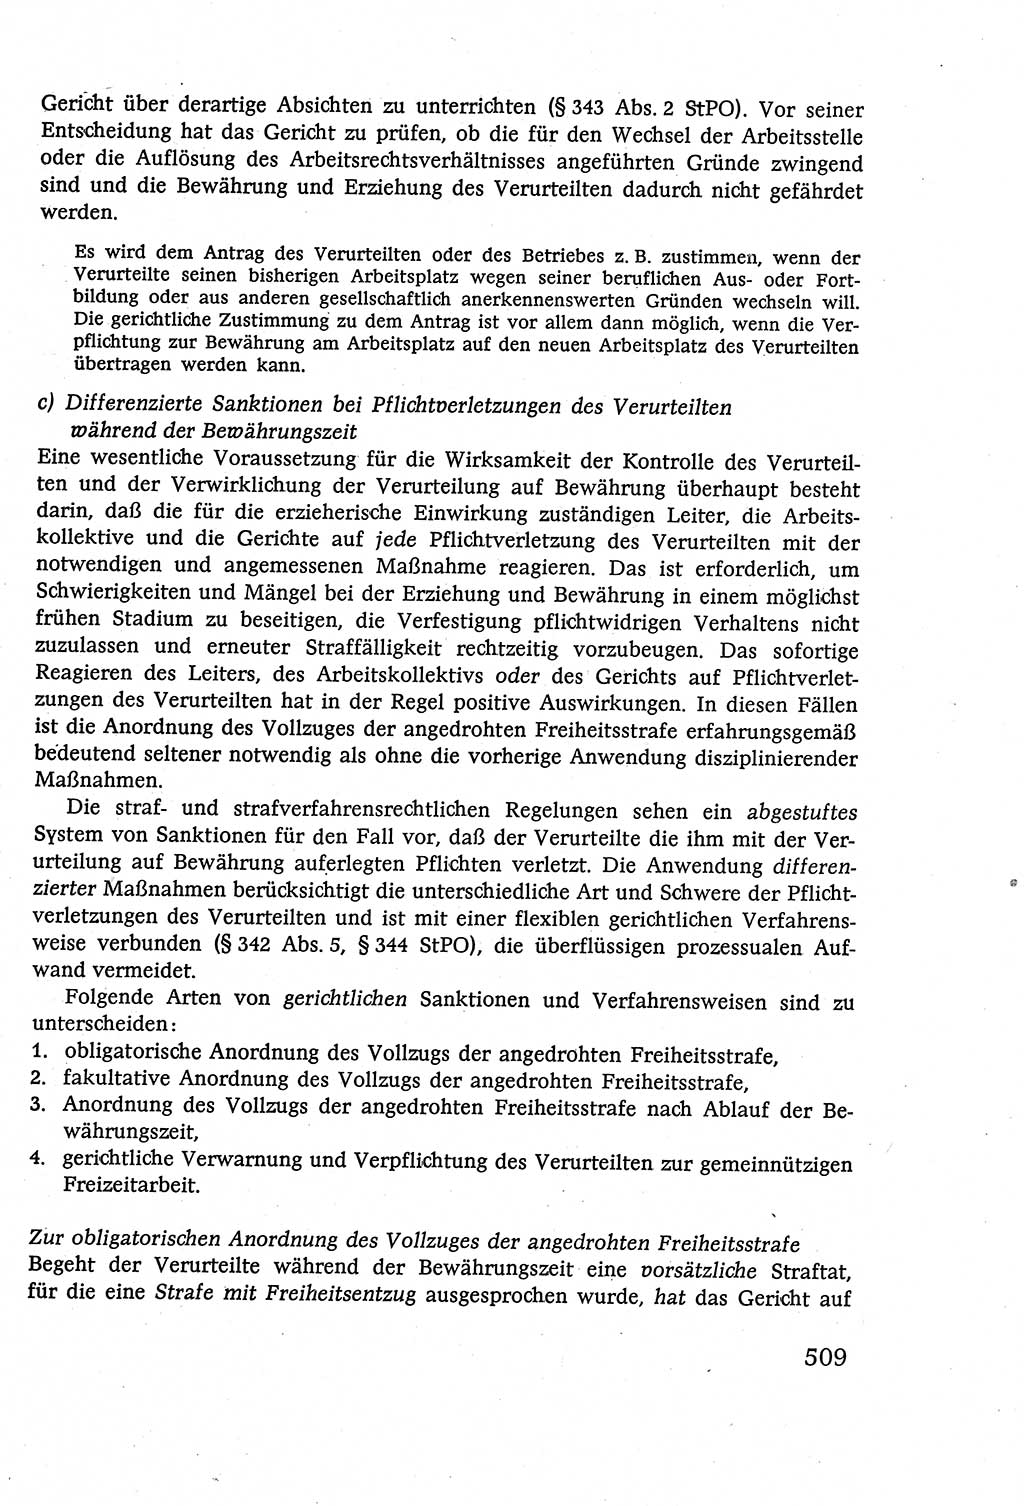 Strafverfahrensrecht [Deutsche Demokratische Republik (DDR)], Lehrbuch 1977, Seite 509 (Strafverf.-R. DDR Lb. 1977, S. 509)